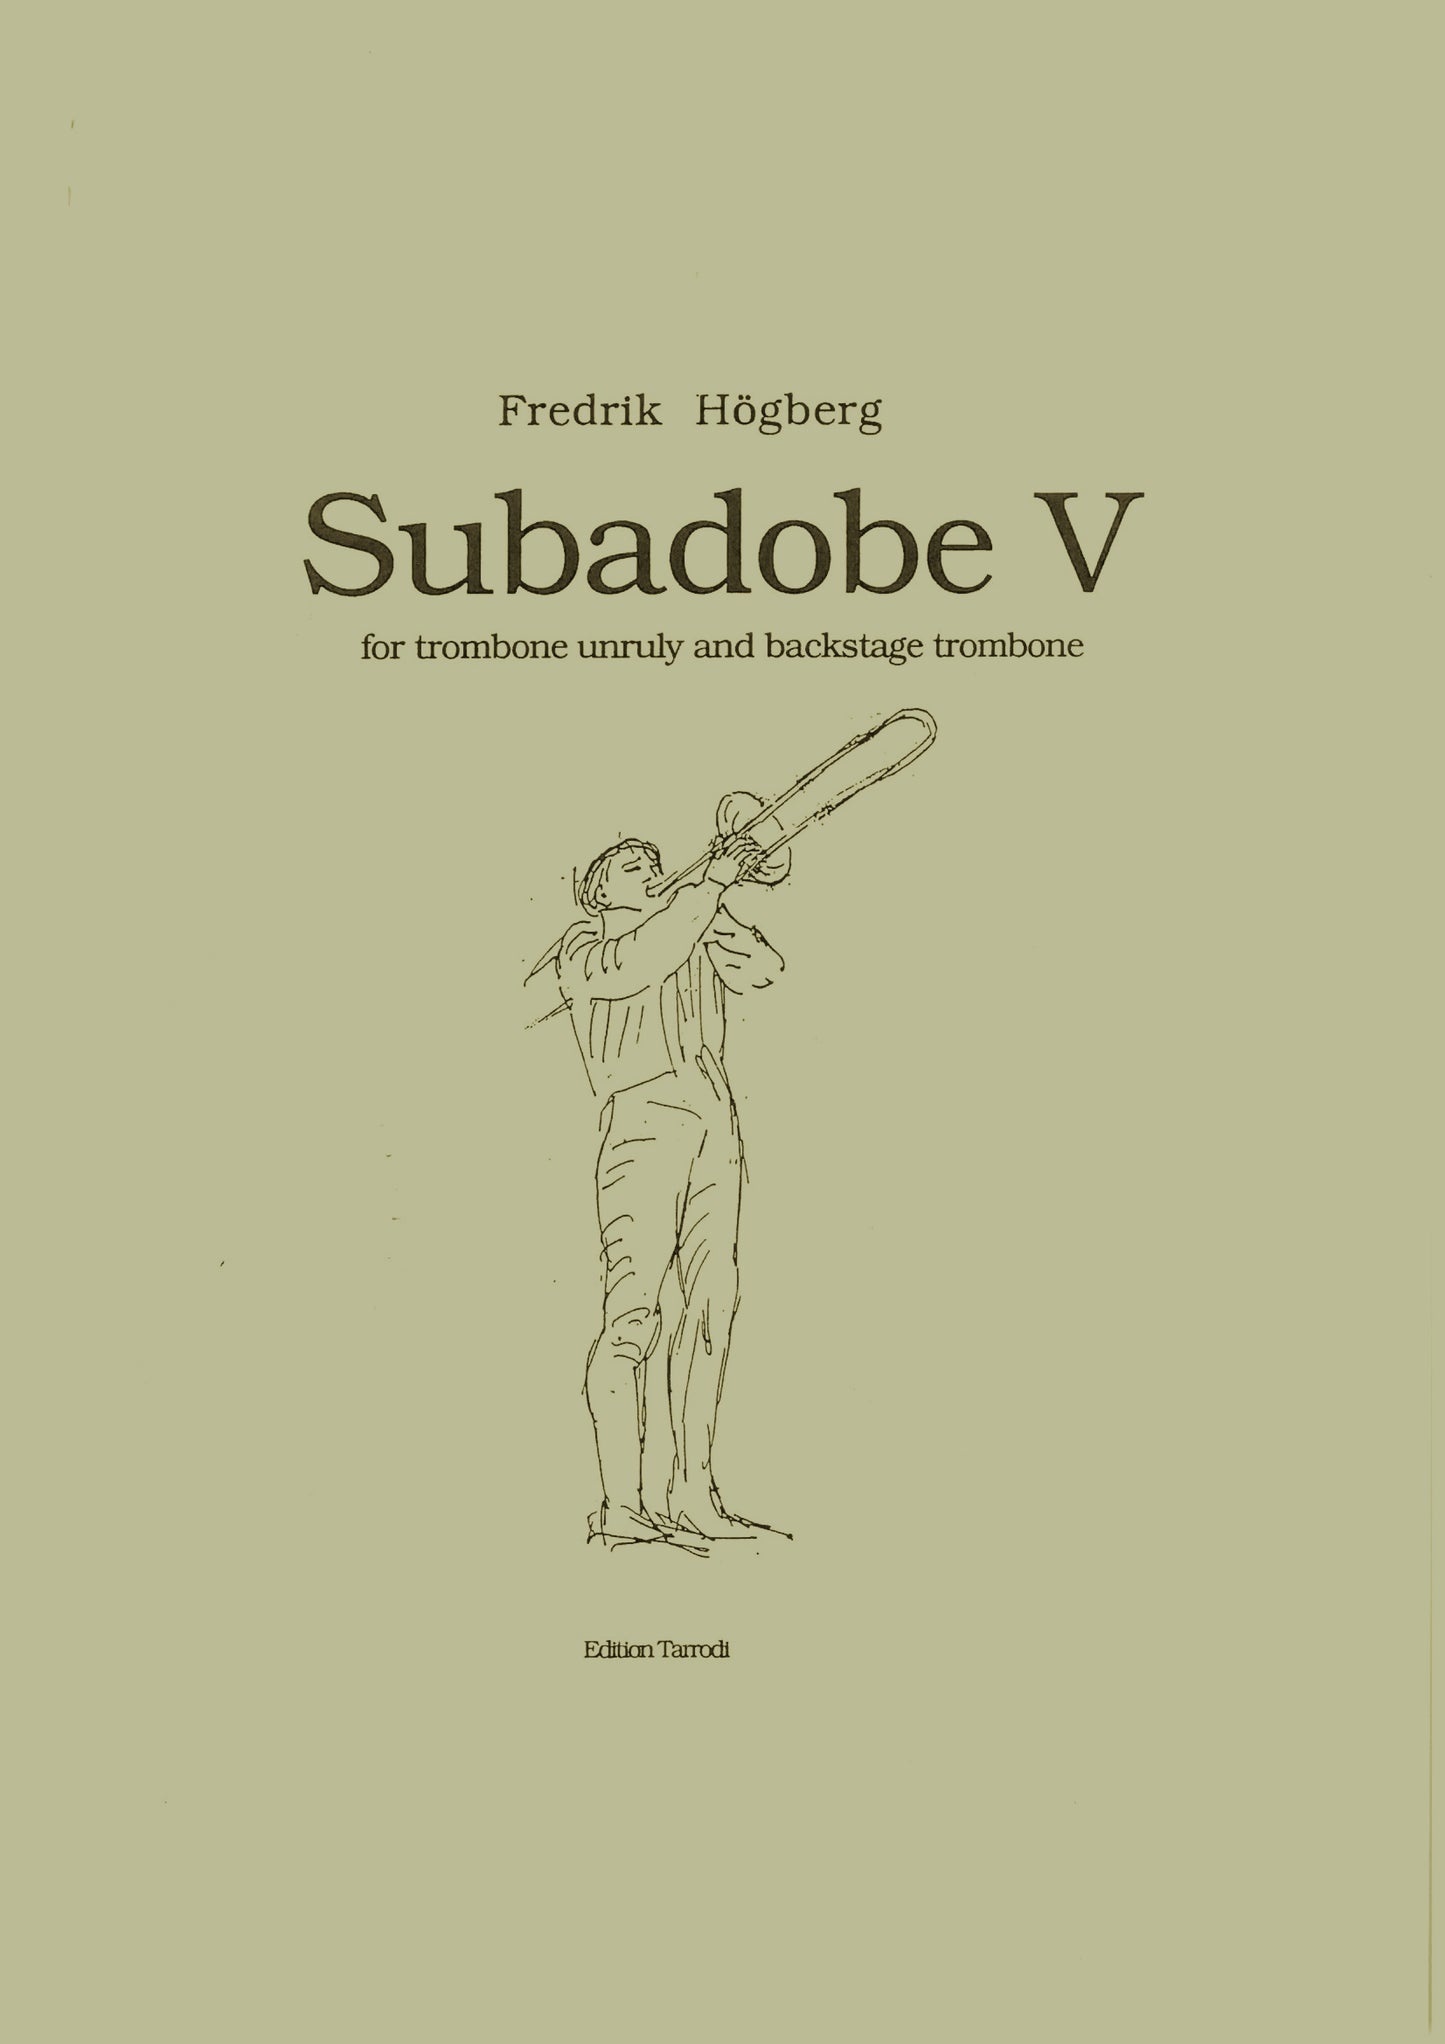 Fredrik Högberg - Su Ba Do Be V